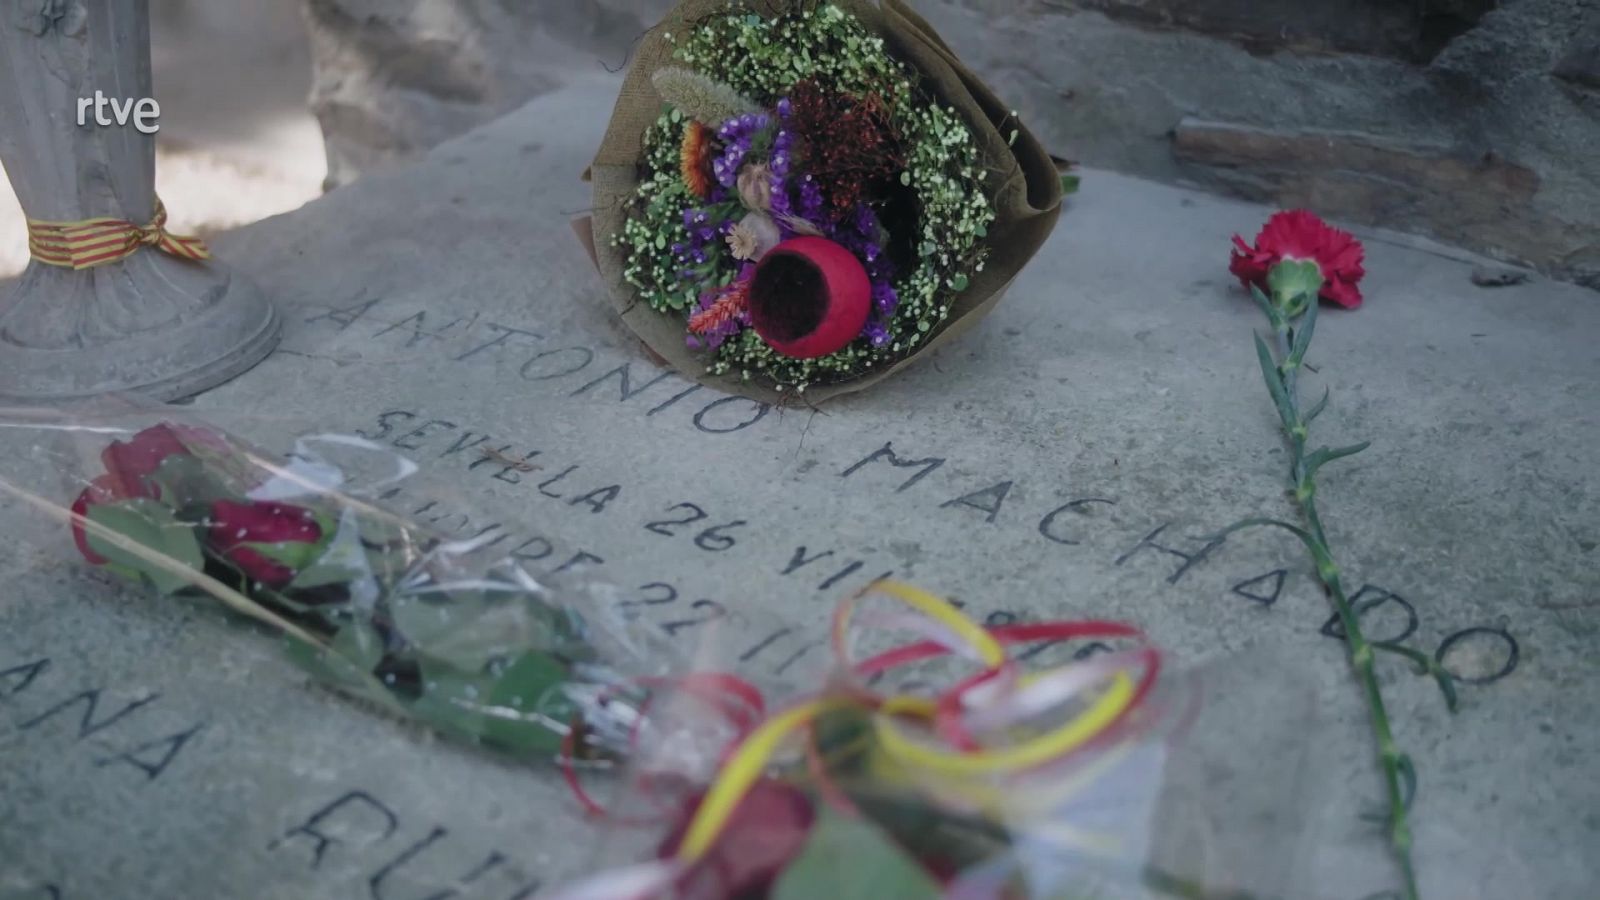 Imprescindibles explica cómo se recaudó dinero para construir la tumba de Antonio Machado en Collioure